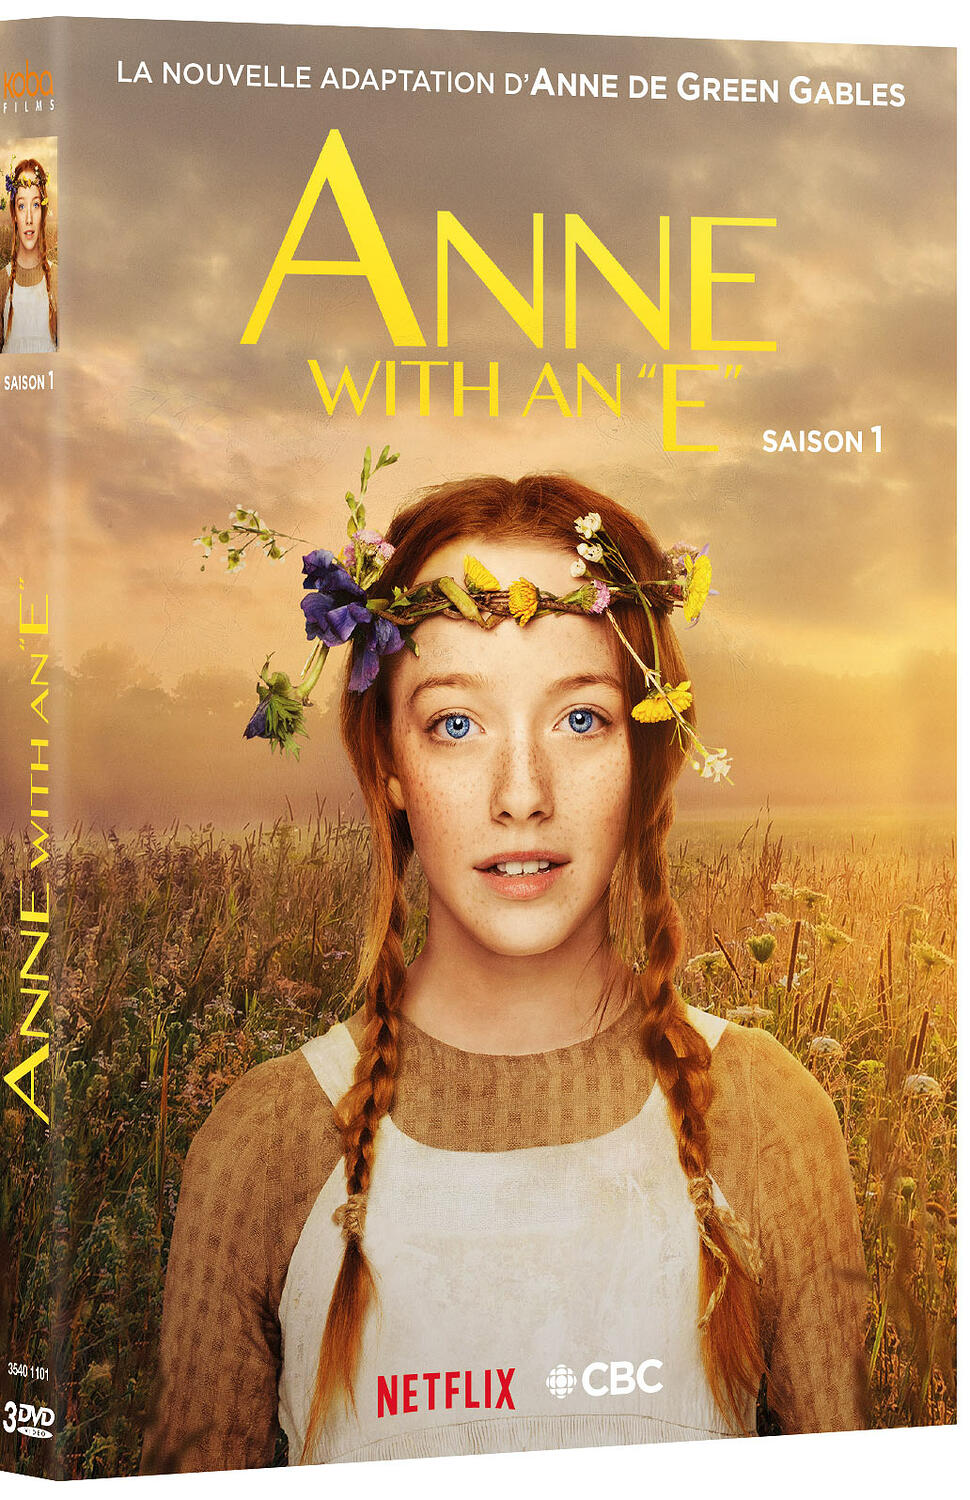 Anne with an e